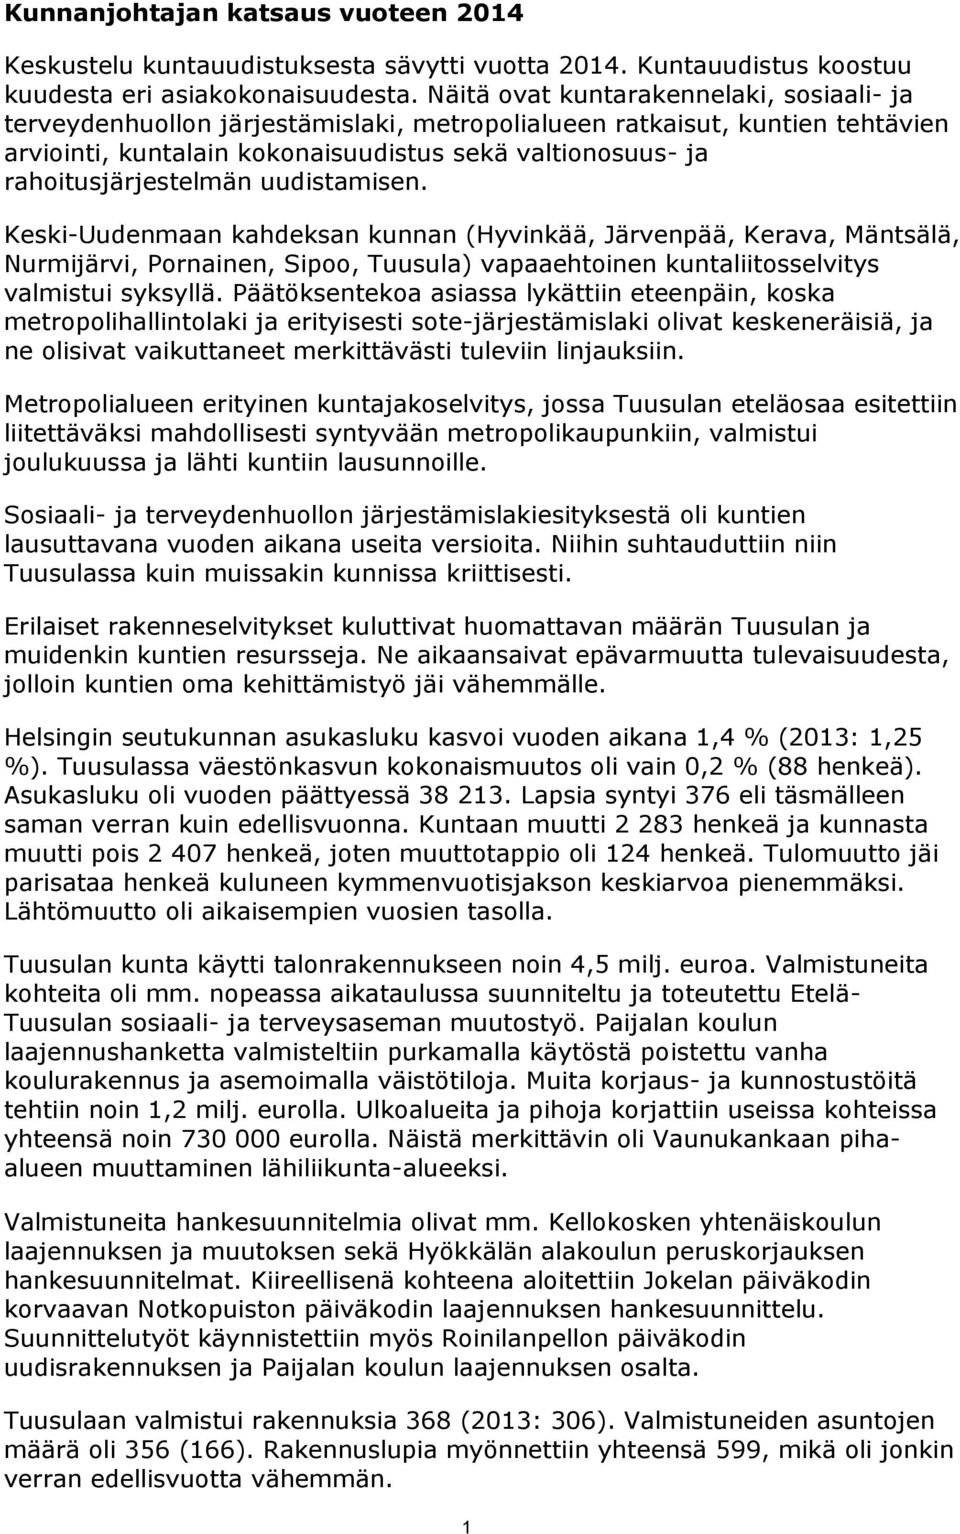 rahoitusjärjestelmän uudistamisen. Keski-Uudenmaan kahdeksan kunnan (Hyvinkää, Järvenpää, Kerava, Mäntsälä, Nurmijärvi, Pornainen, Sipoo, Tuusula) vapaaehtoinen kuntaliitosselvitys valmistui syksyllä.